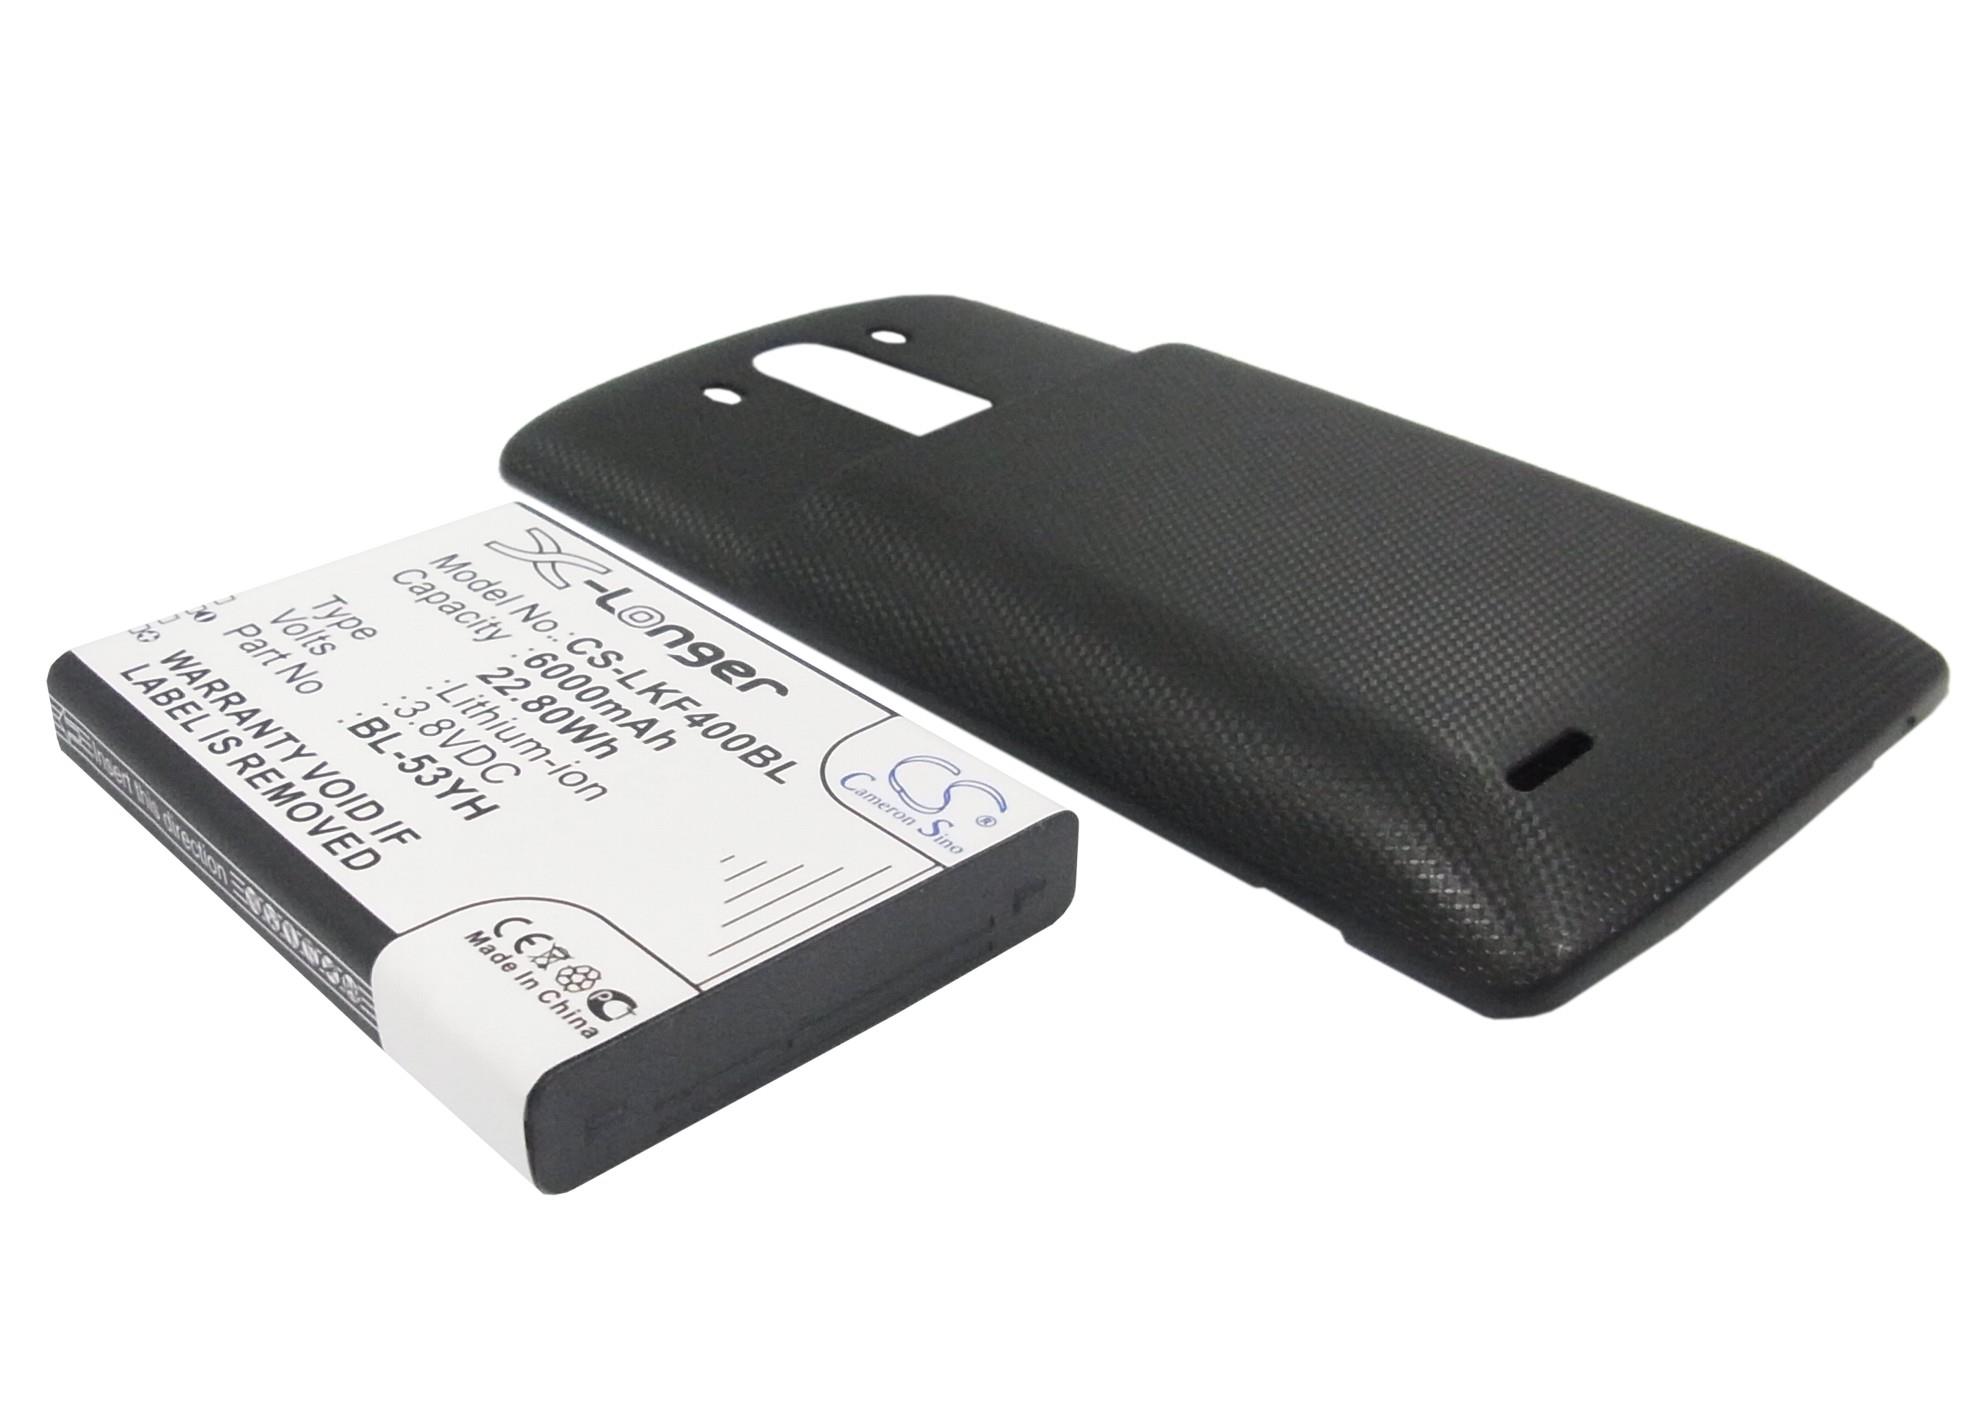 vintrons Replacement Battery For LG D830, D850, D850 LTE, D851, D855, D855 LTE